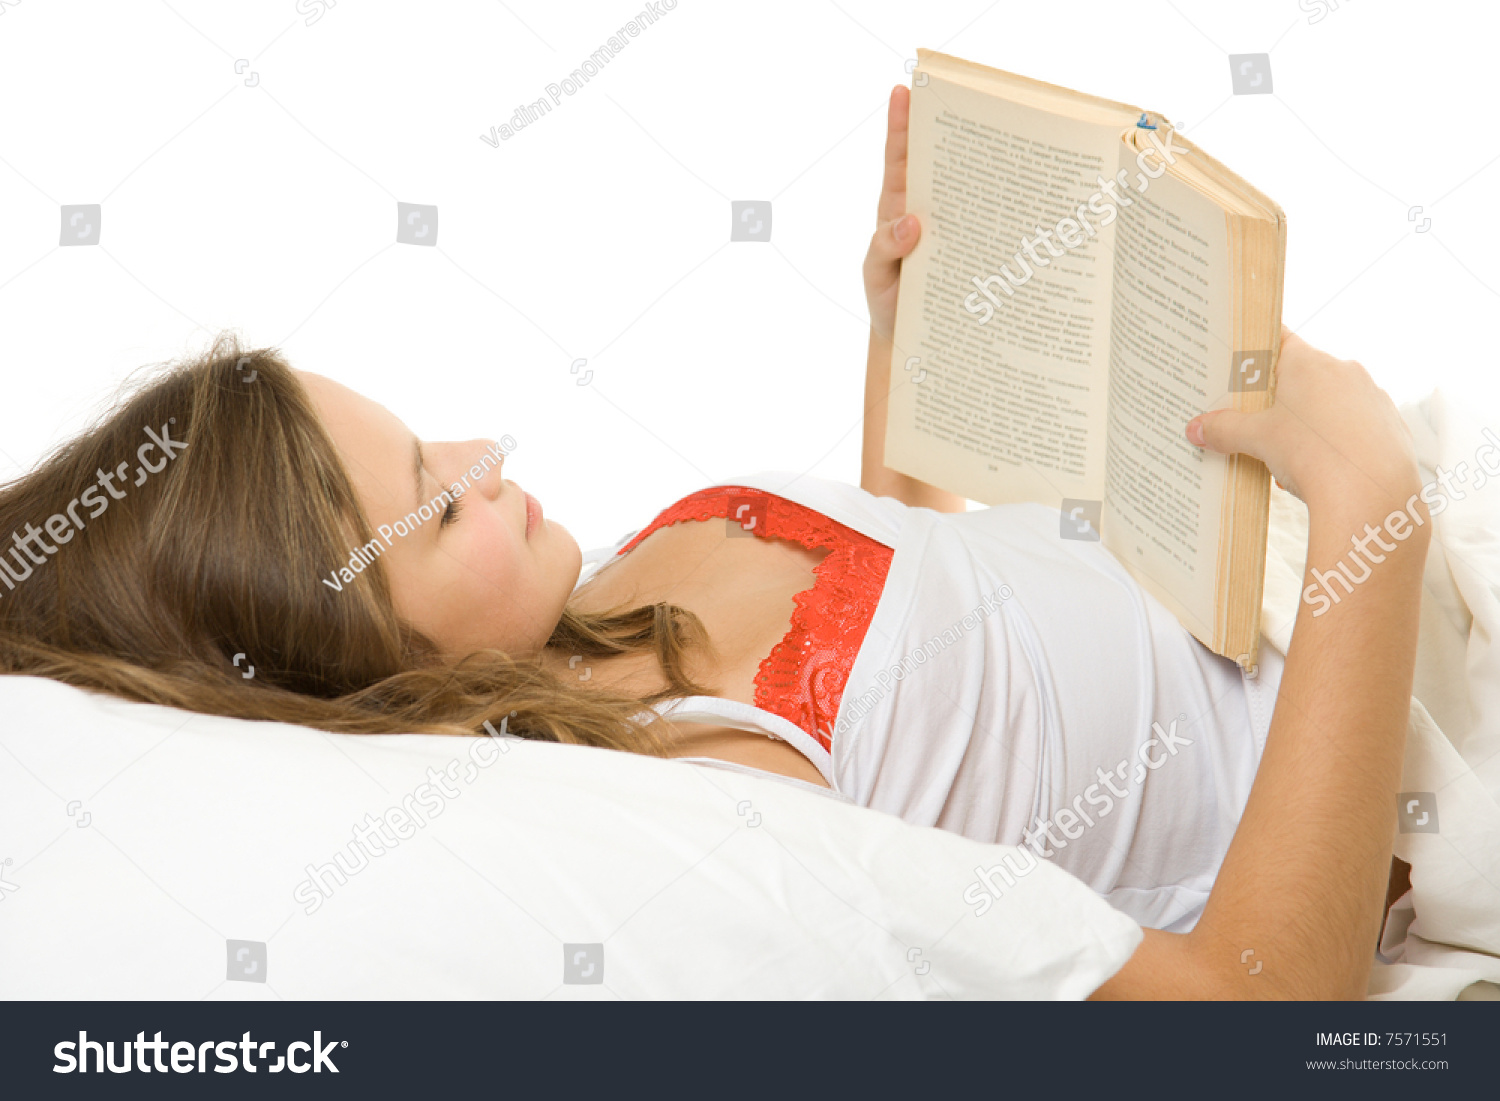 Расслабиться книга. Чтение лежа. Чтение в кровати. Книга в постели. Чтение книг лежа.